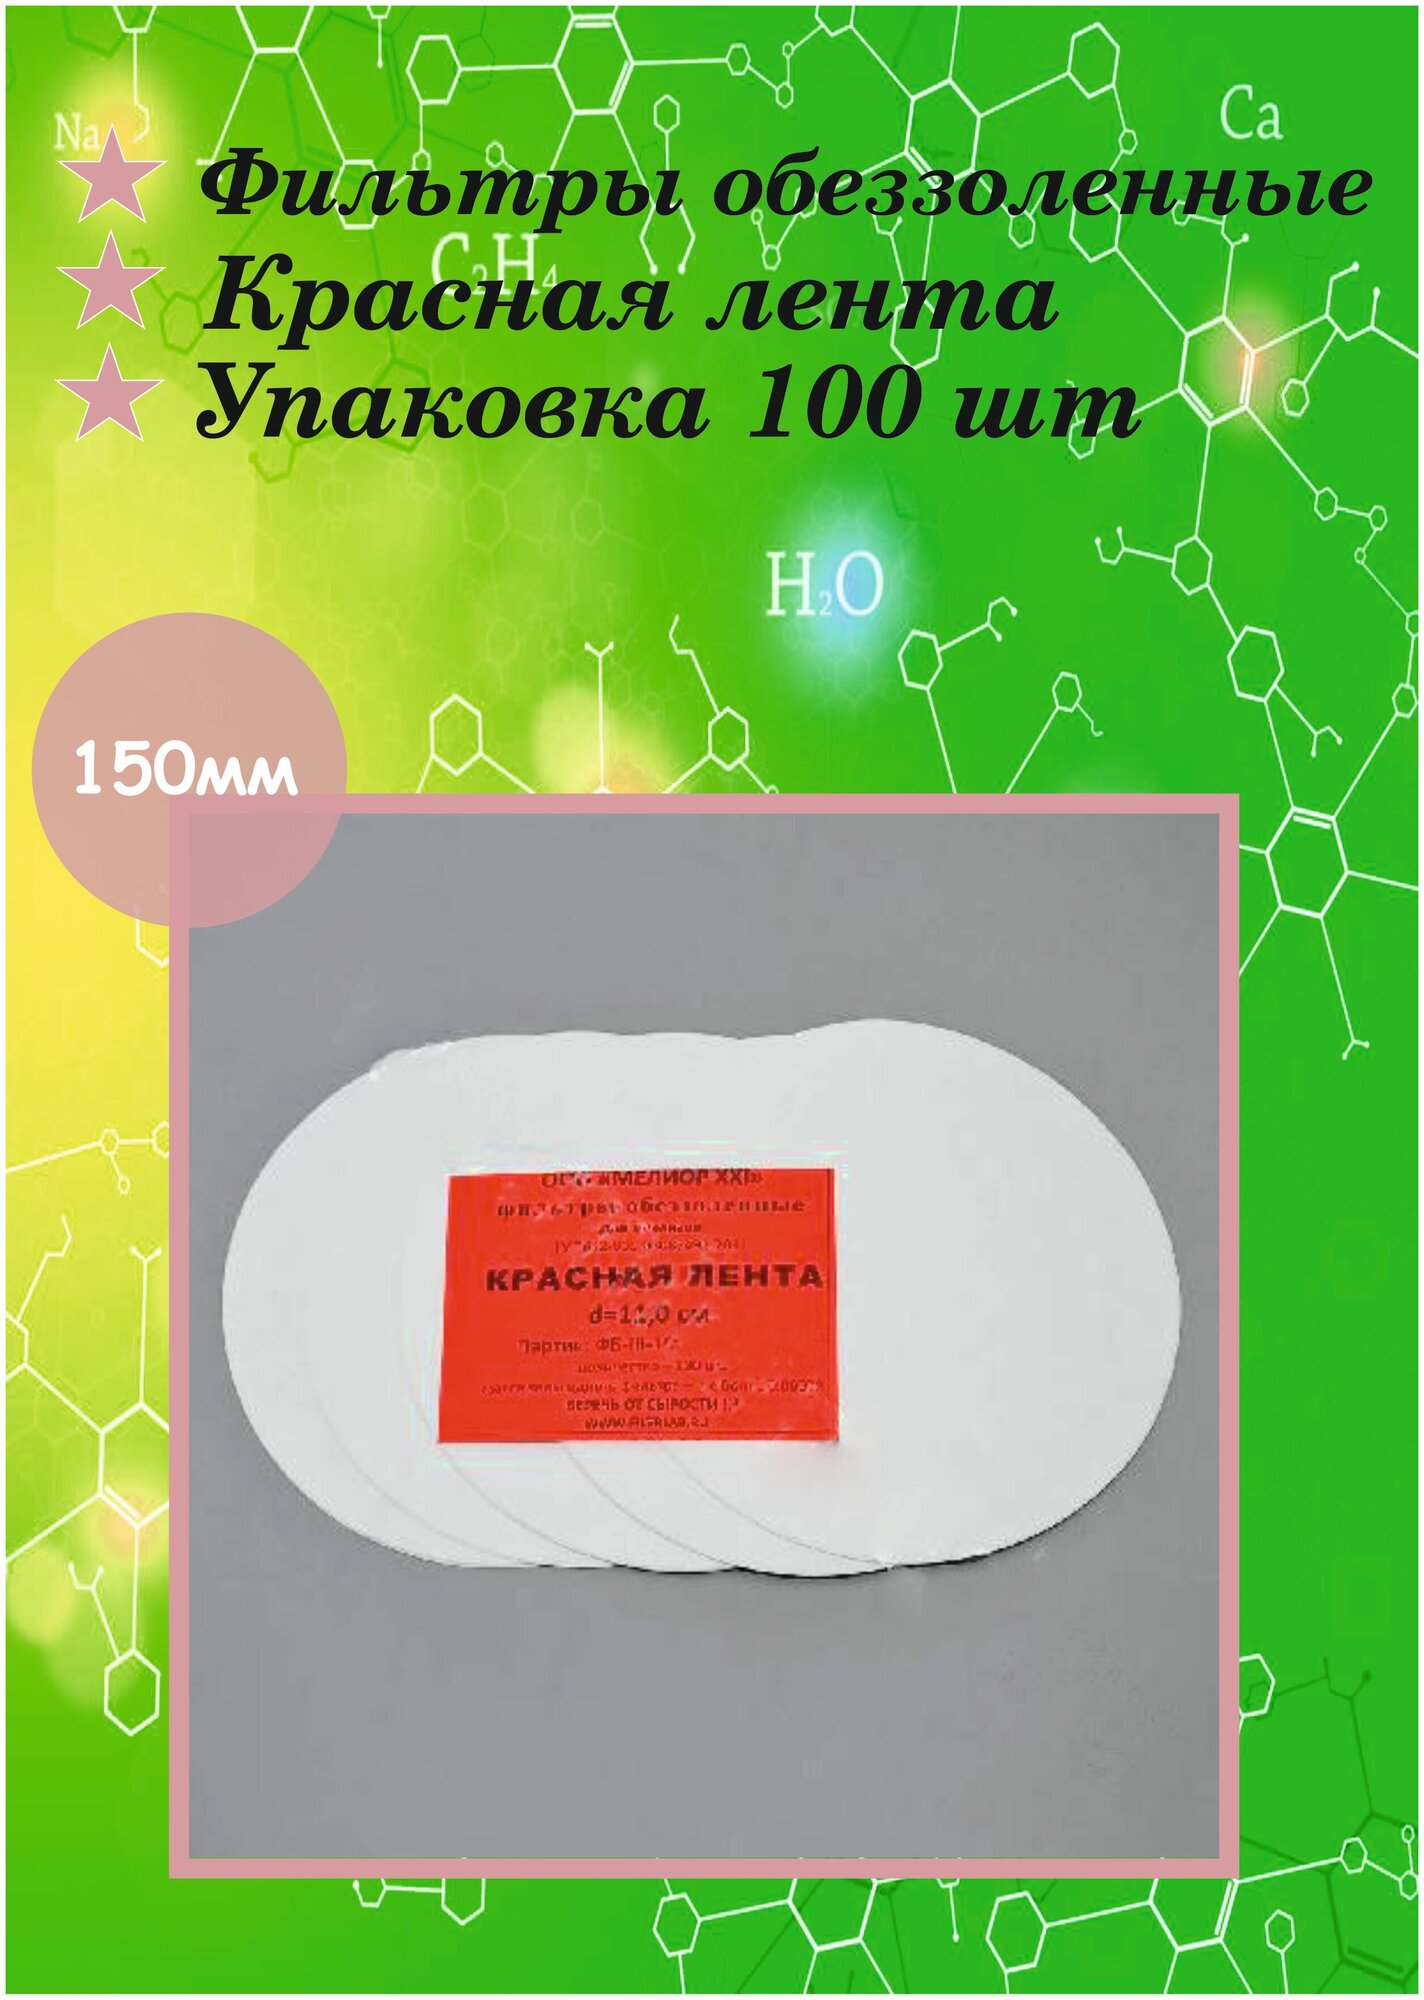 Фильтры обеззоленные Красная лента диаметр 150 мм - 100 штук